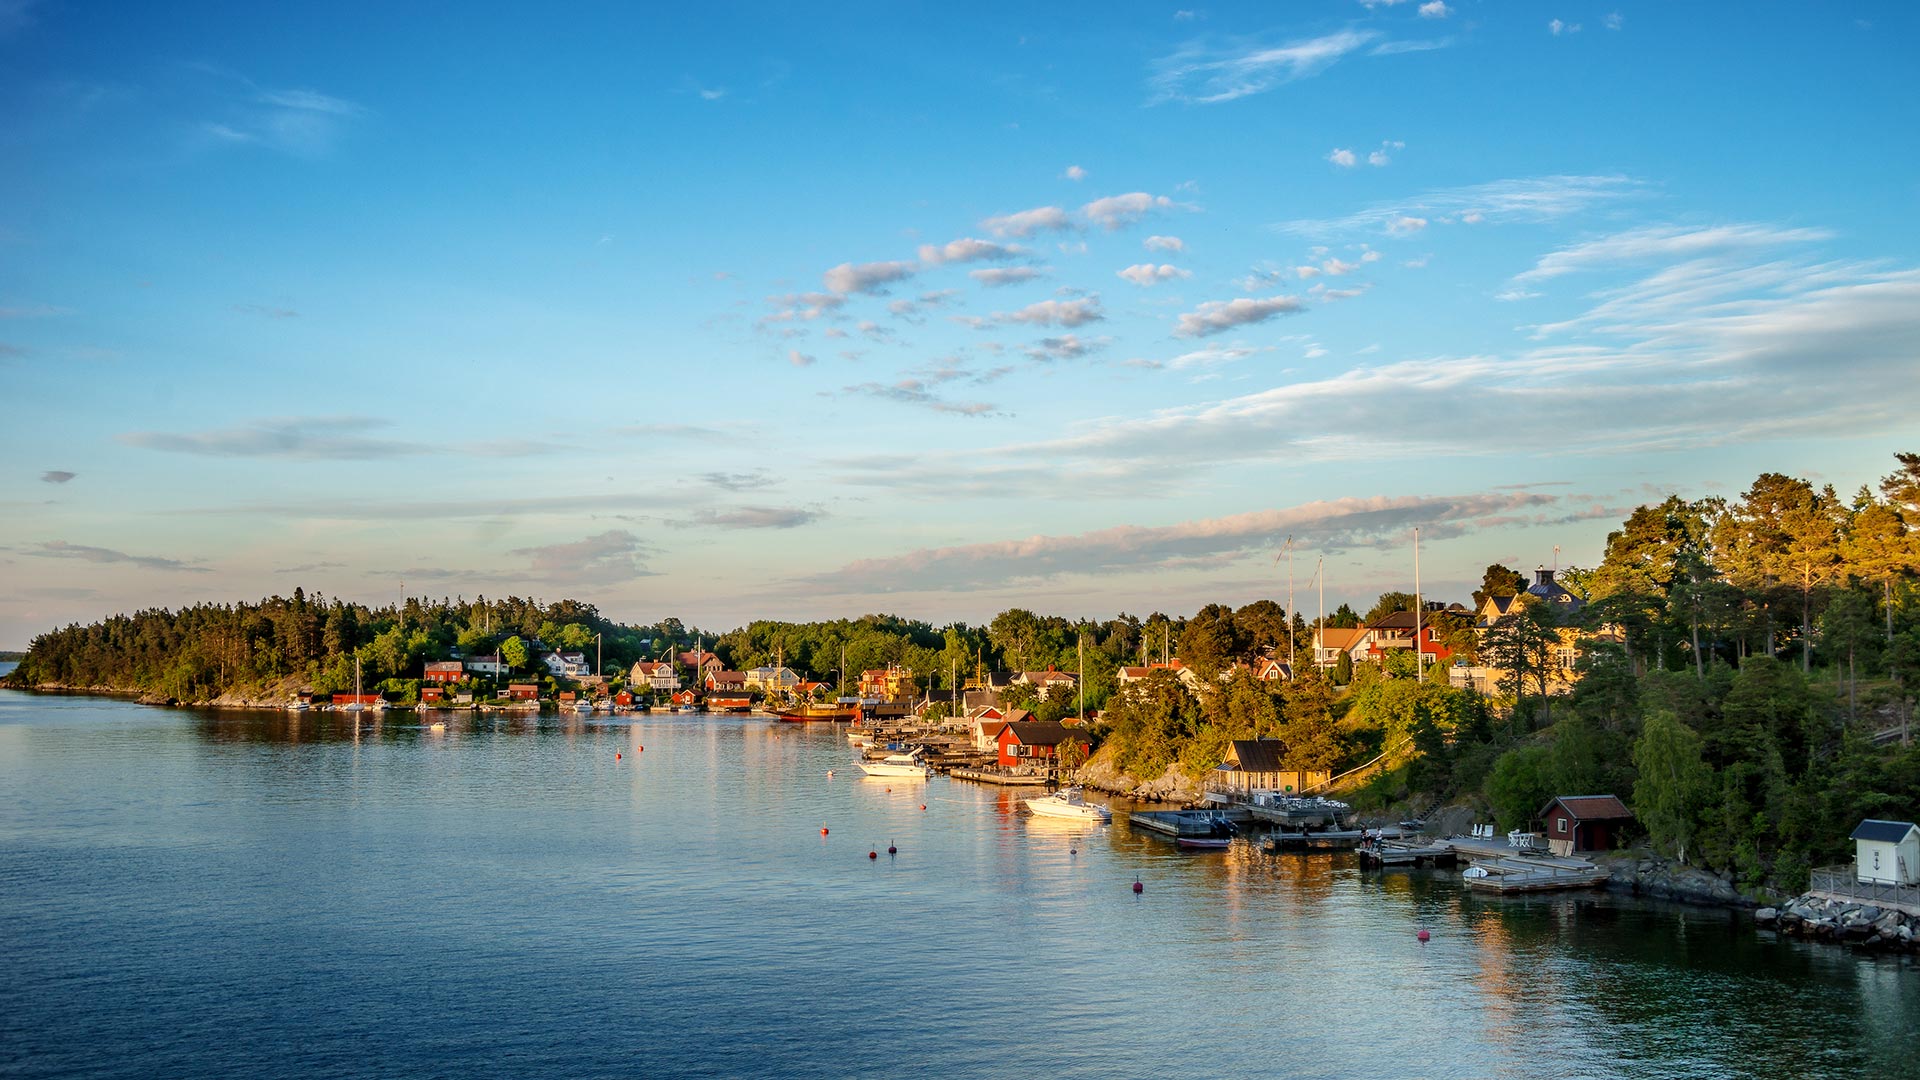 Stockholm archipelago, Sweden